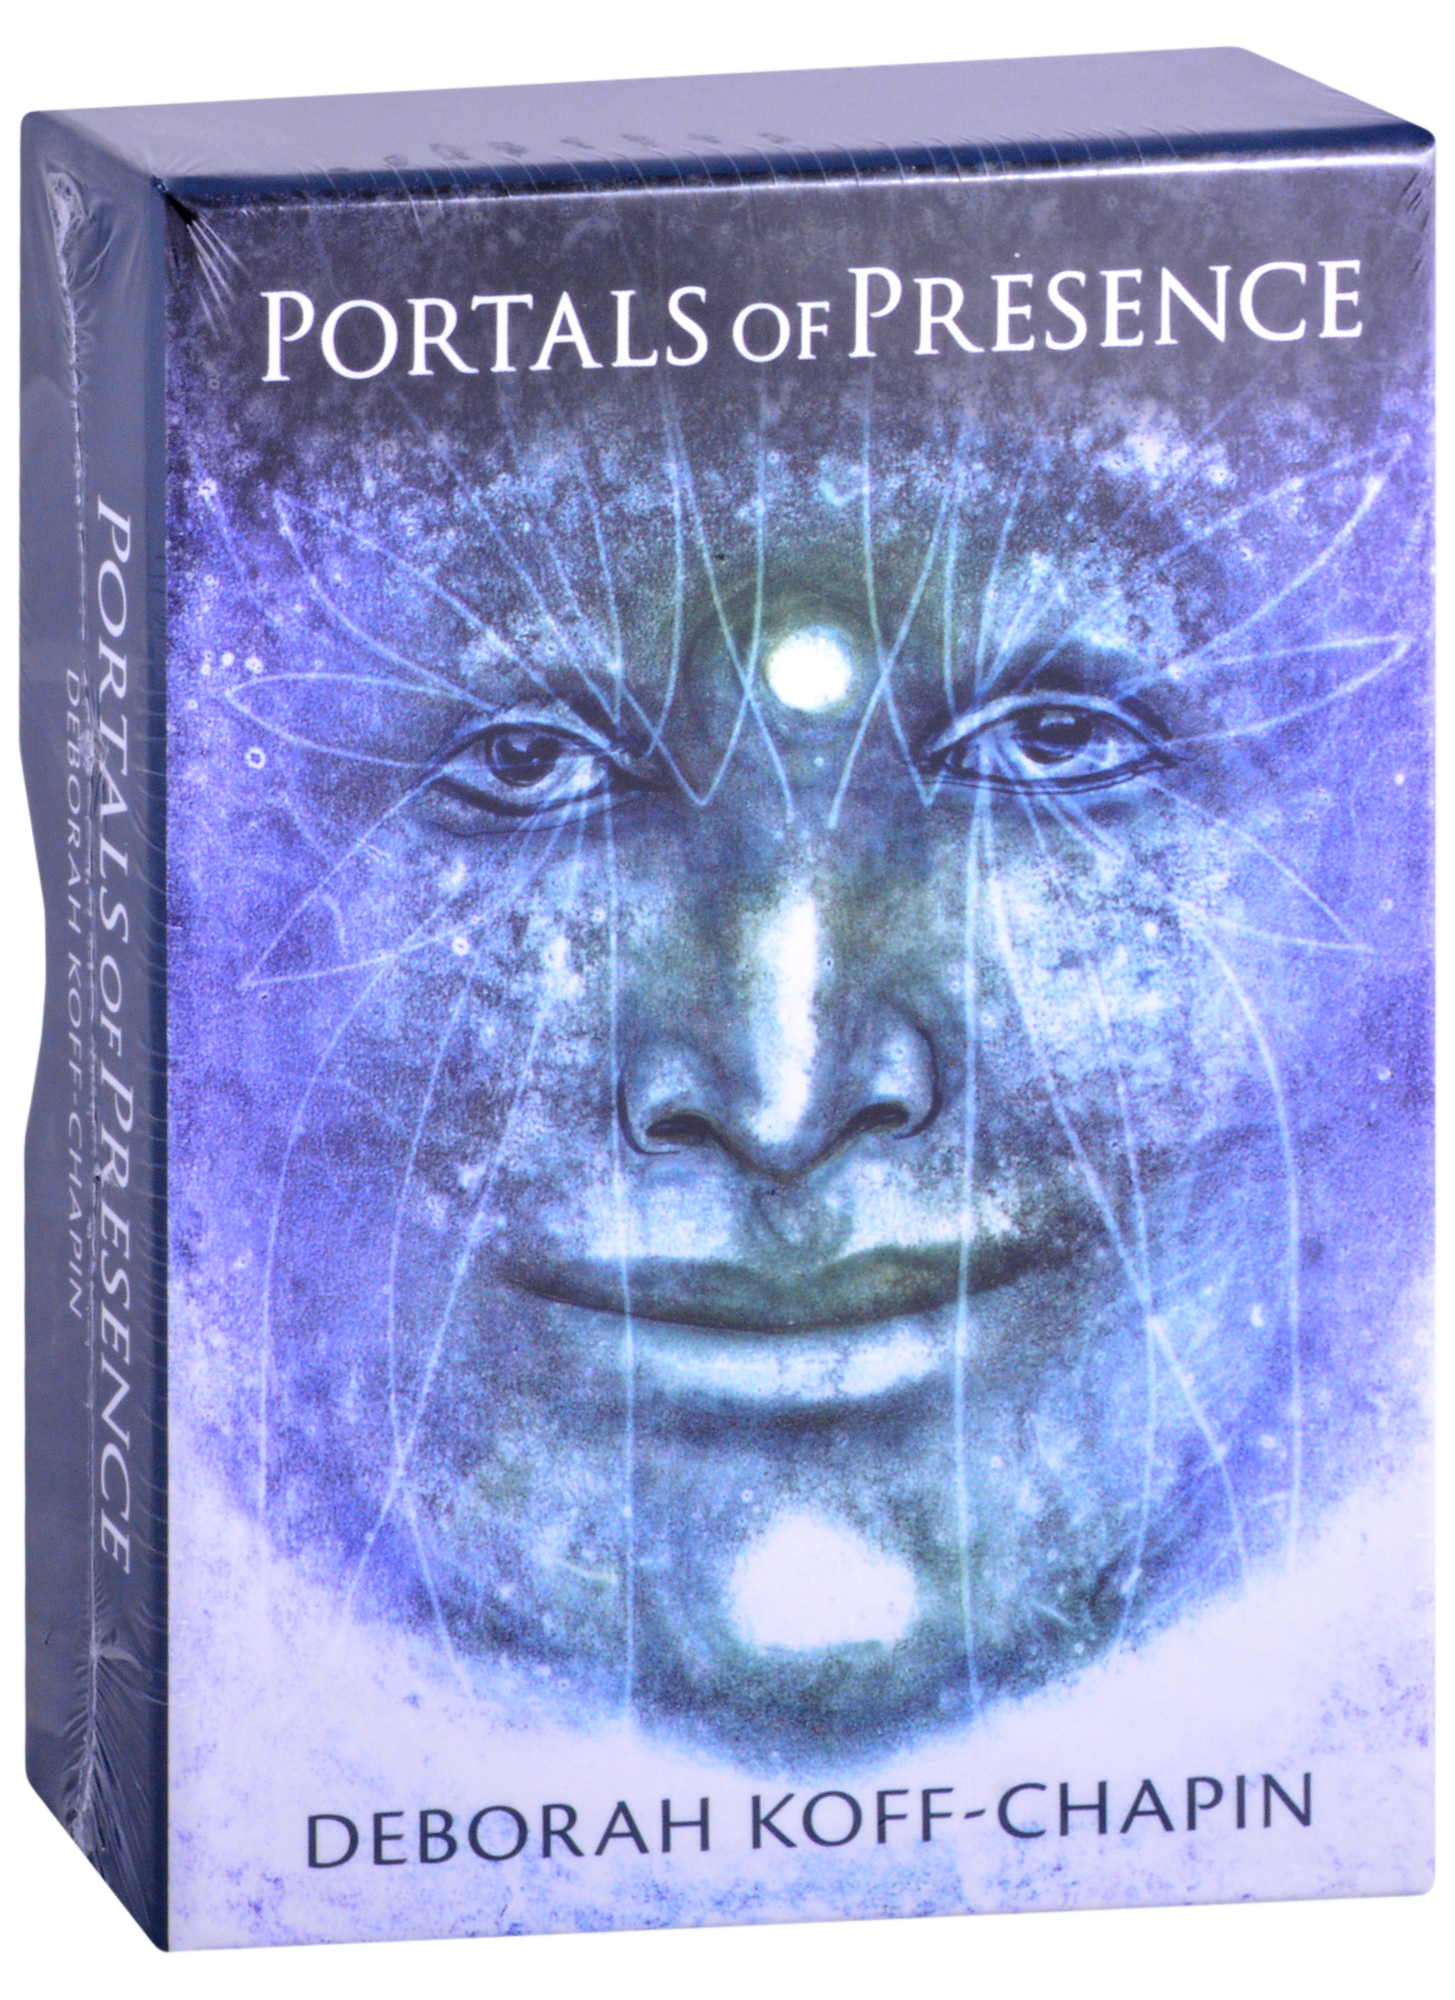 koff chapin d portals of presence Koff-Chapin D. Portals of Presence